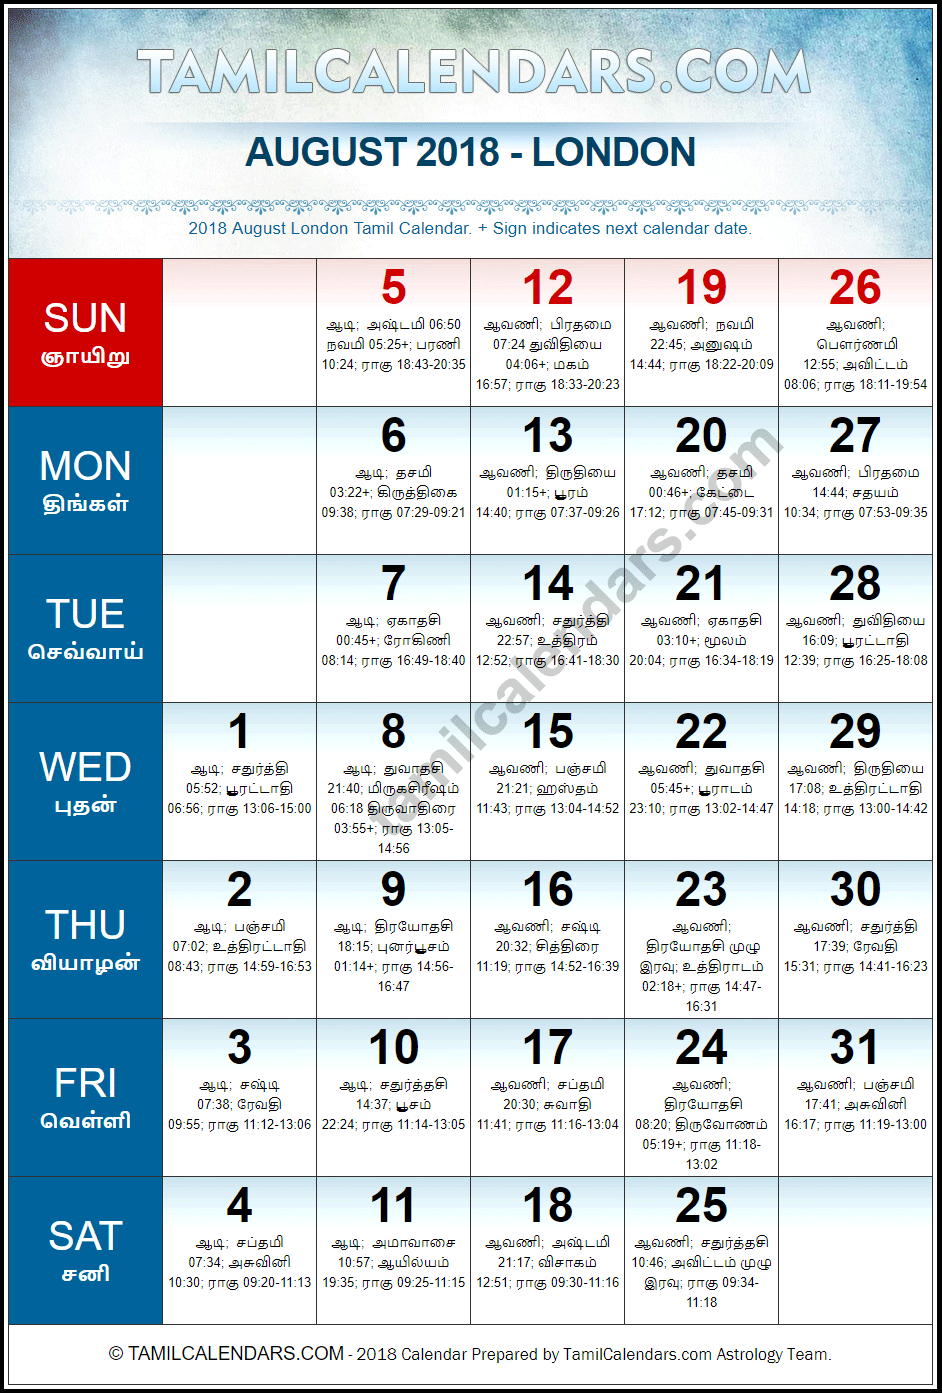 August 2018 Tamil Calendar for London, UK